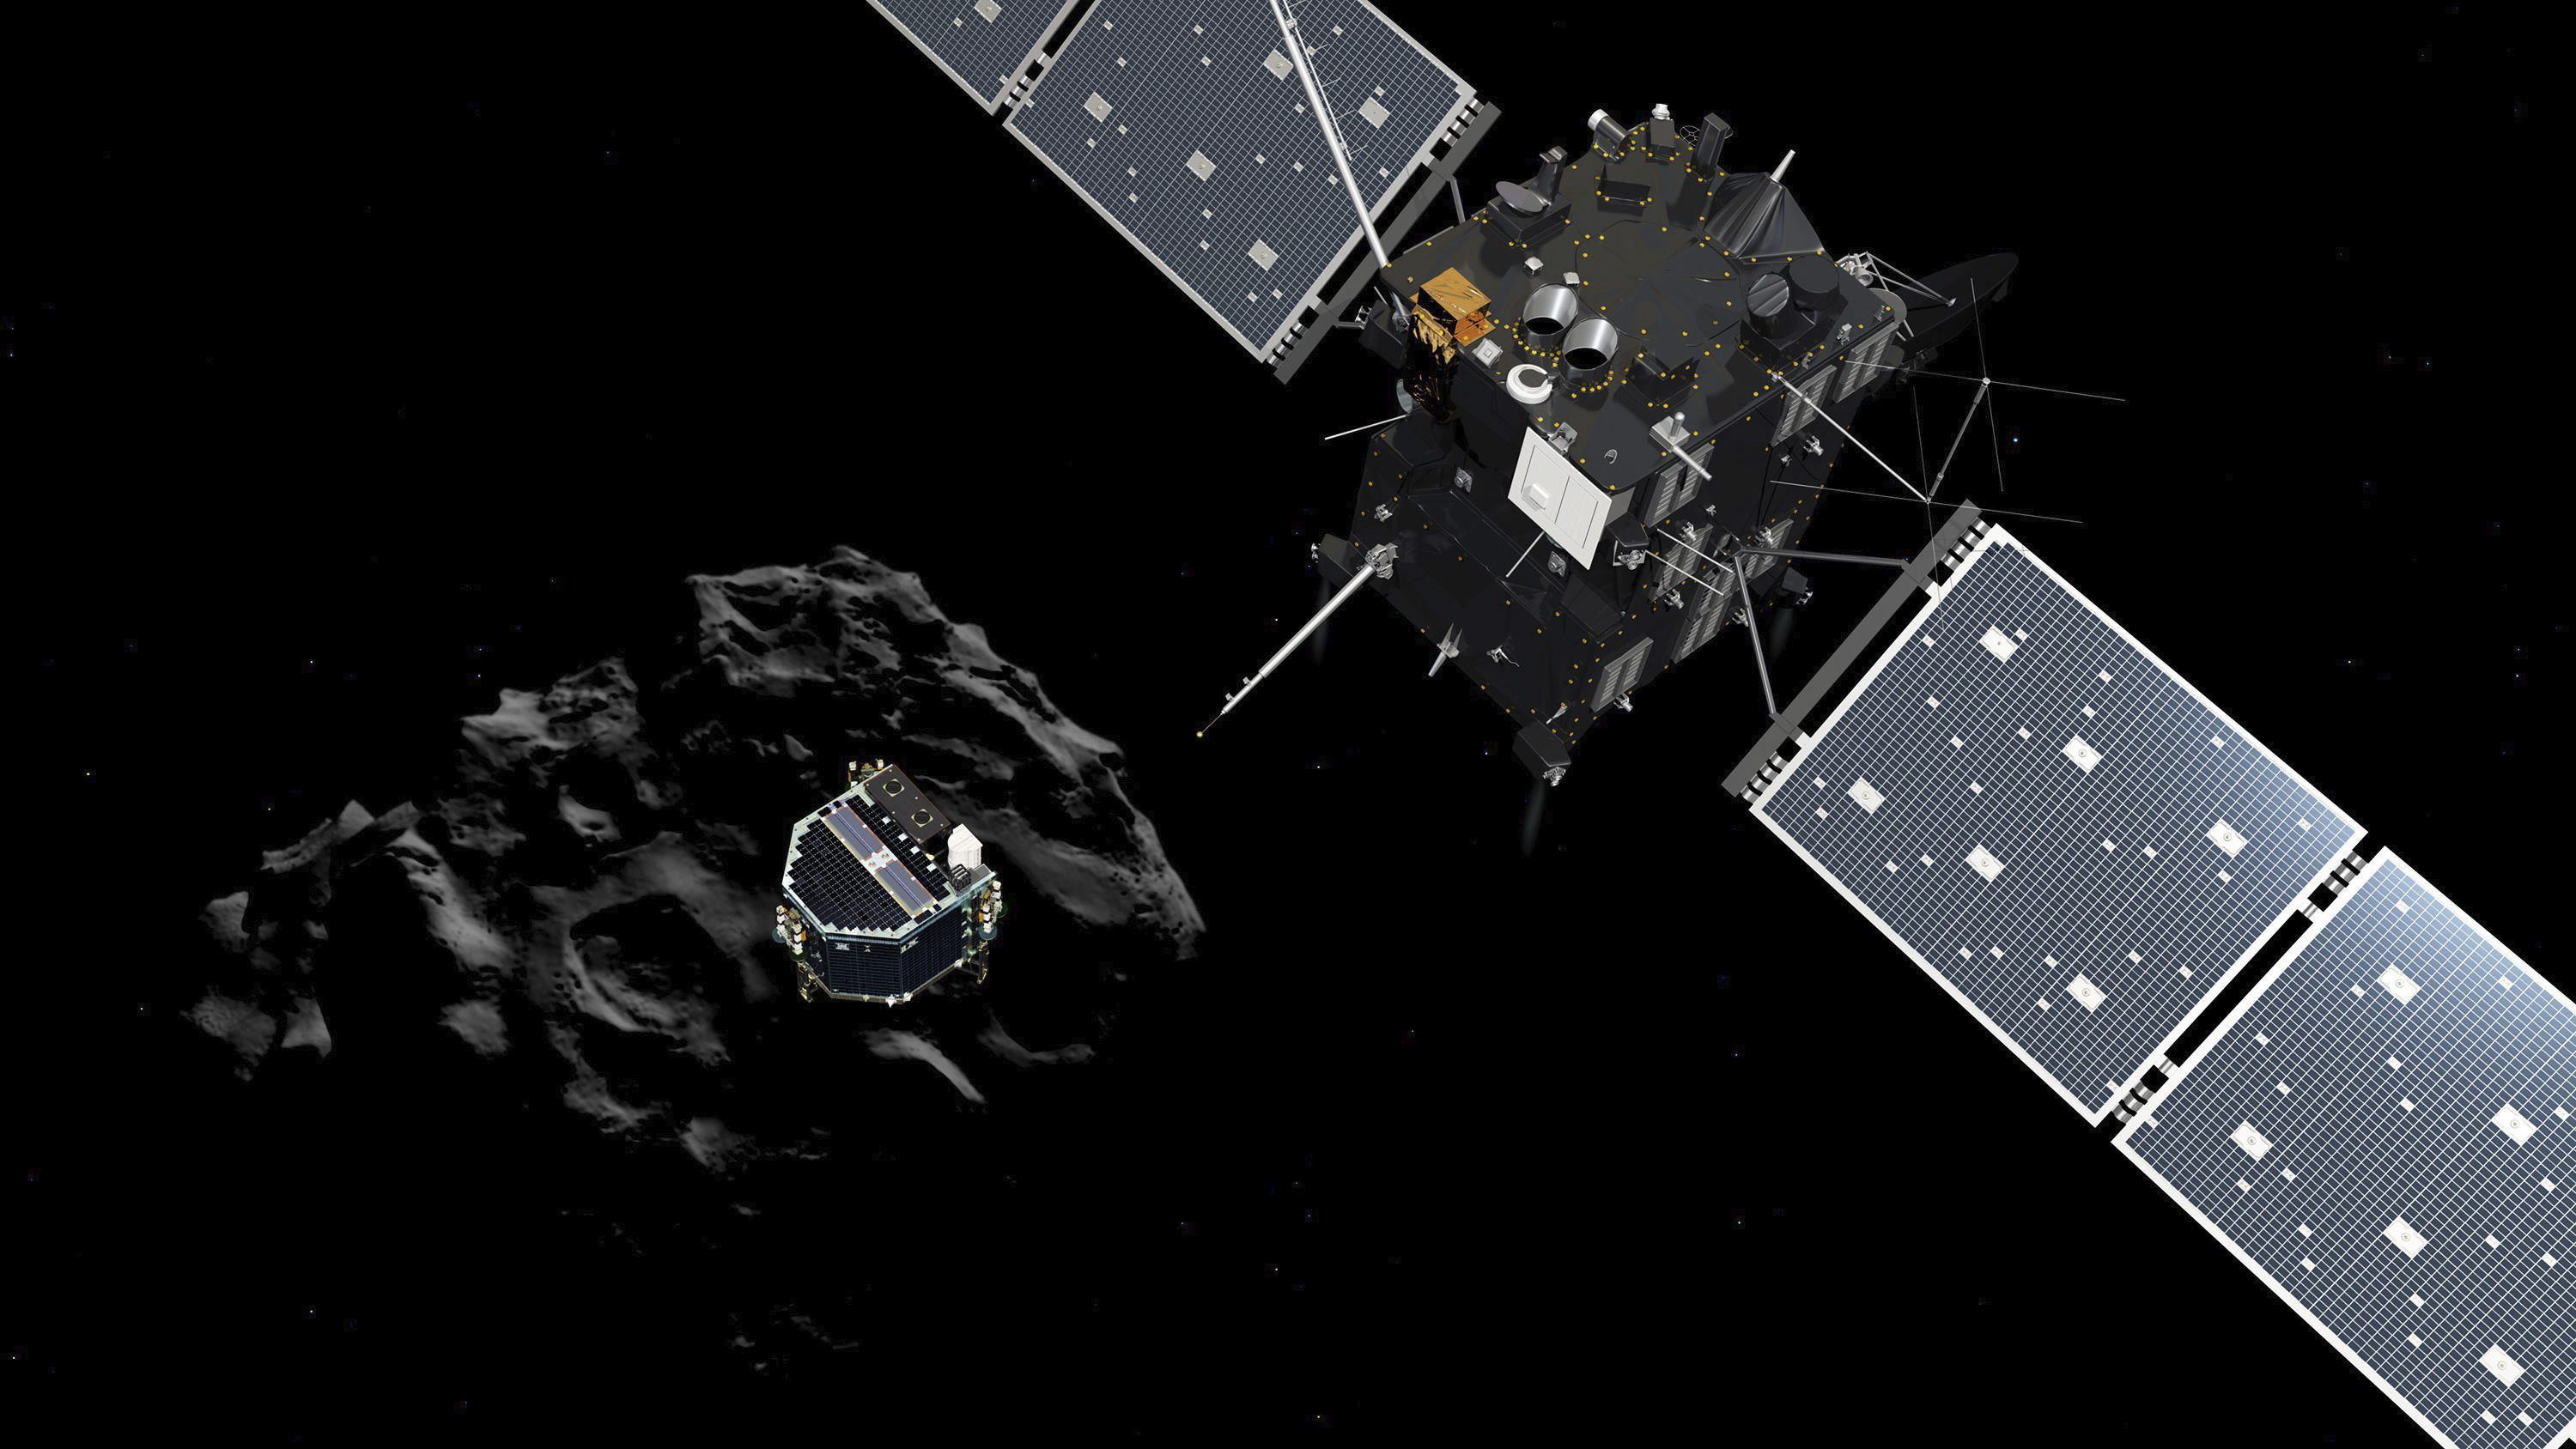 PH002 DARMSTADT (ALEMANIA) 12/11/2014.- Fotografía sin fechar facilitada por la Agencia Espacial Europea (ESA) de un fotograma de la animación del módulo Philae mientras se separa de Rosetta y desciende sobre la superficie del cometa 67/P Churyumov-Gerasimenko. El módulo Philae sigue vivo en la dirección correcta hacia el cometa 67/P Churyumov-Gerasimenko, en el que aterrizará sobre las 16.00 horas GMT para estudiar su composición. EFE/Esa / Atg Medialab / FOTO CEDIDA SOLO USO EDITORIAL PROHIBIDA SU VENTA